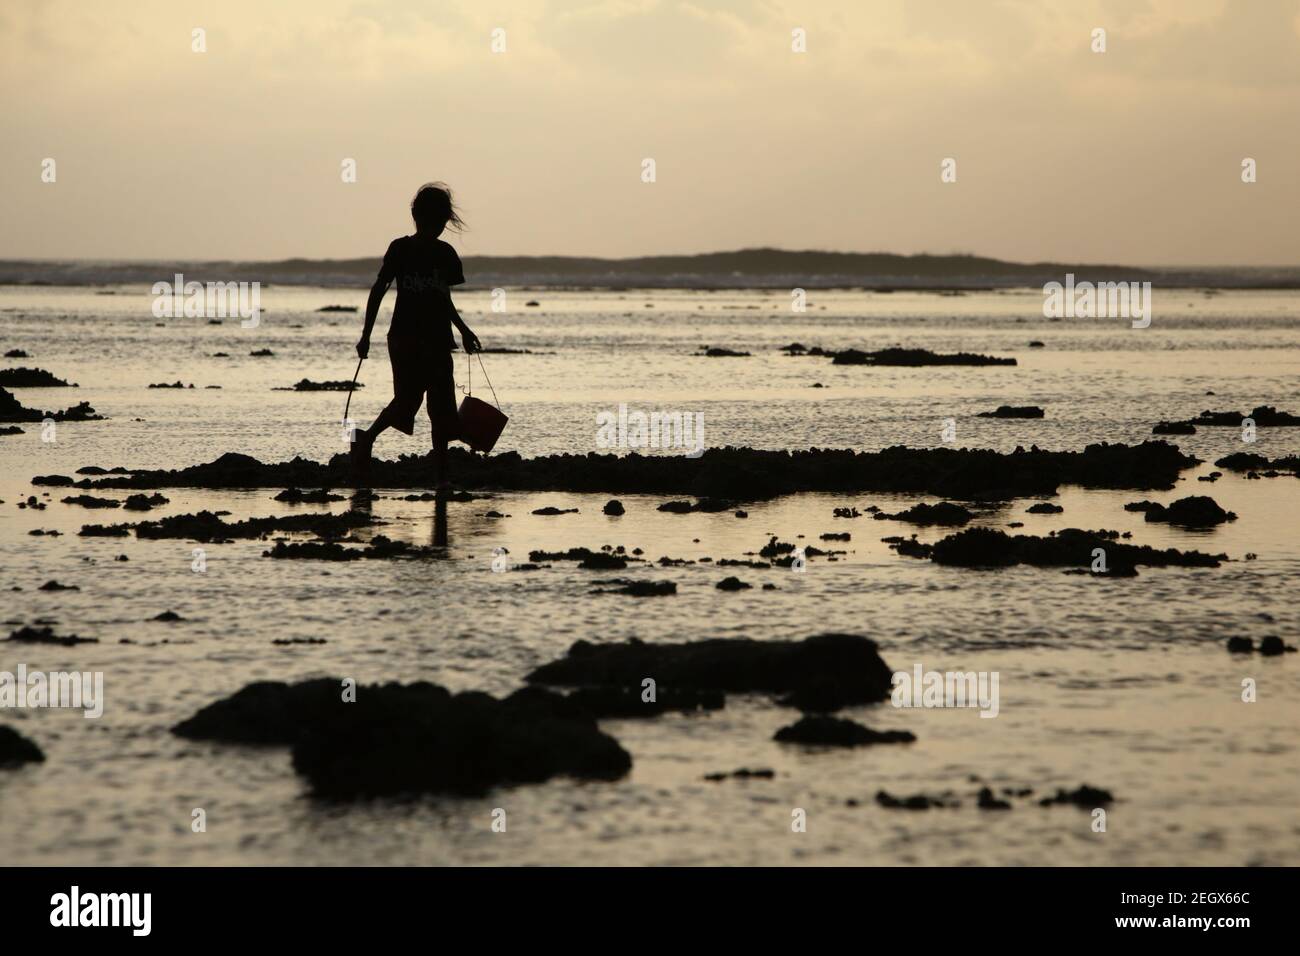 Une jeune femme a silhoueté comme elle marche sur la plage intertidale rocheuse pendant la marée basse, transportant des seaux en plastique pour recueillir des produits de la mer. Banque D'Images